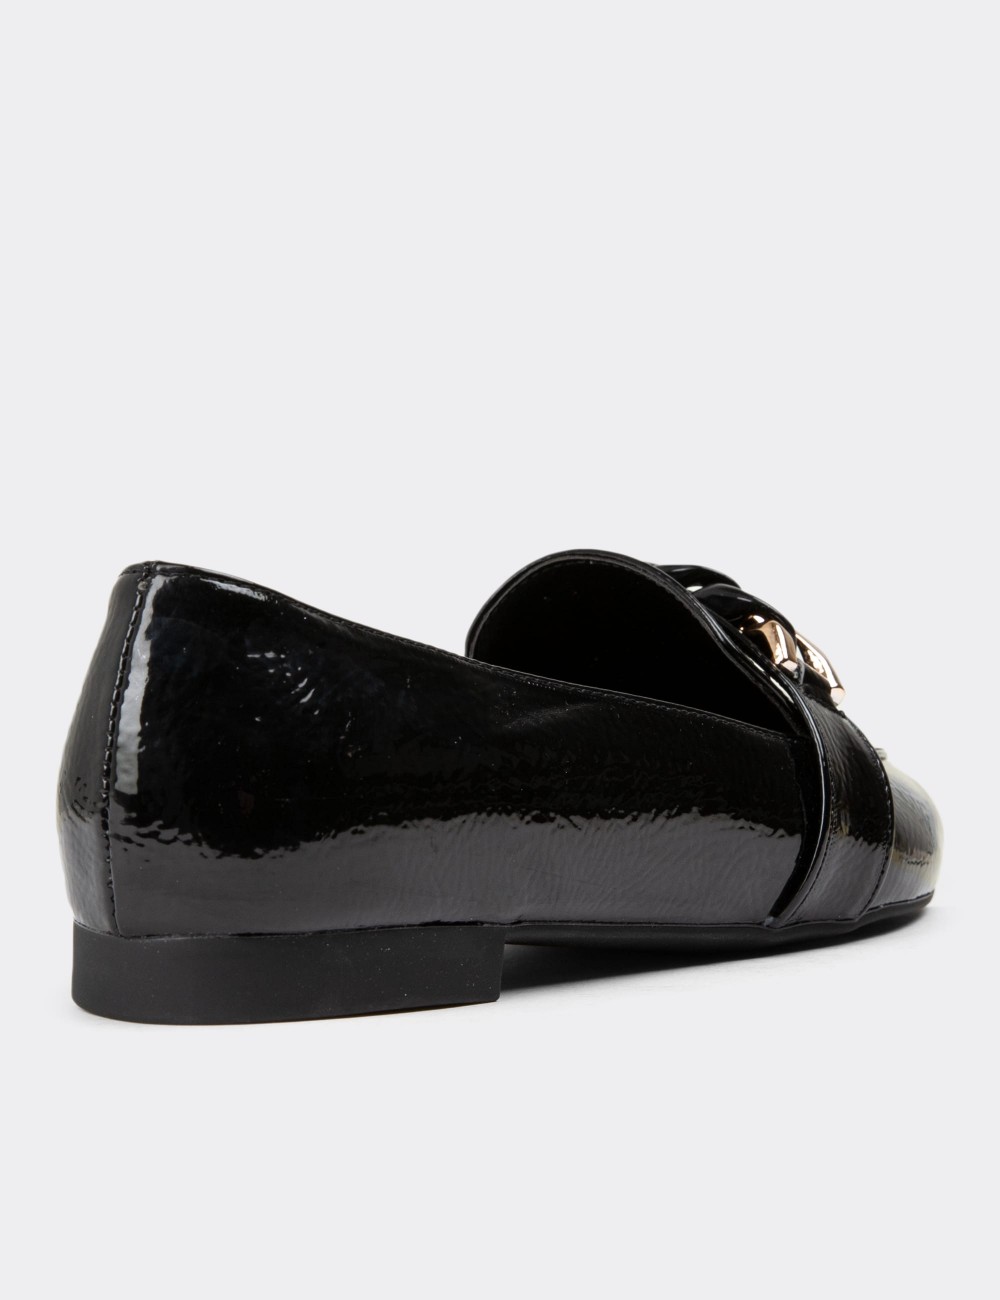 Black Patent Loafers - 38606ZSYHC01